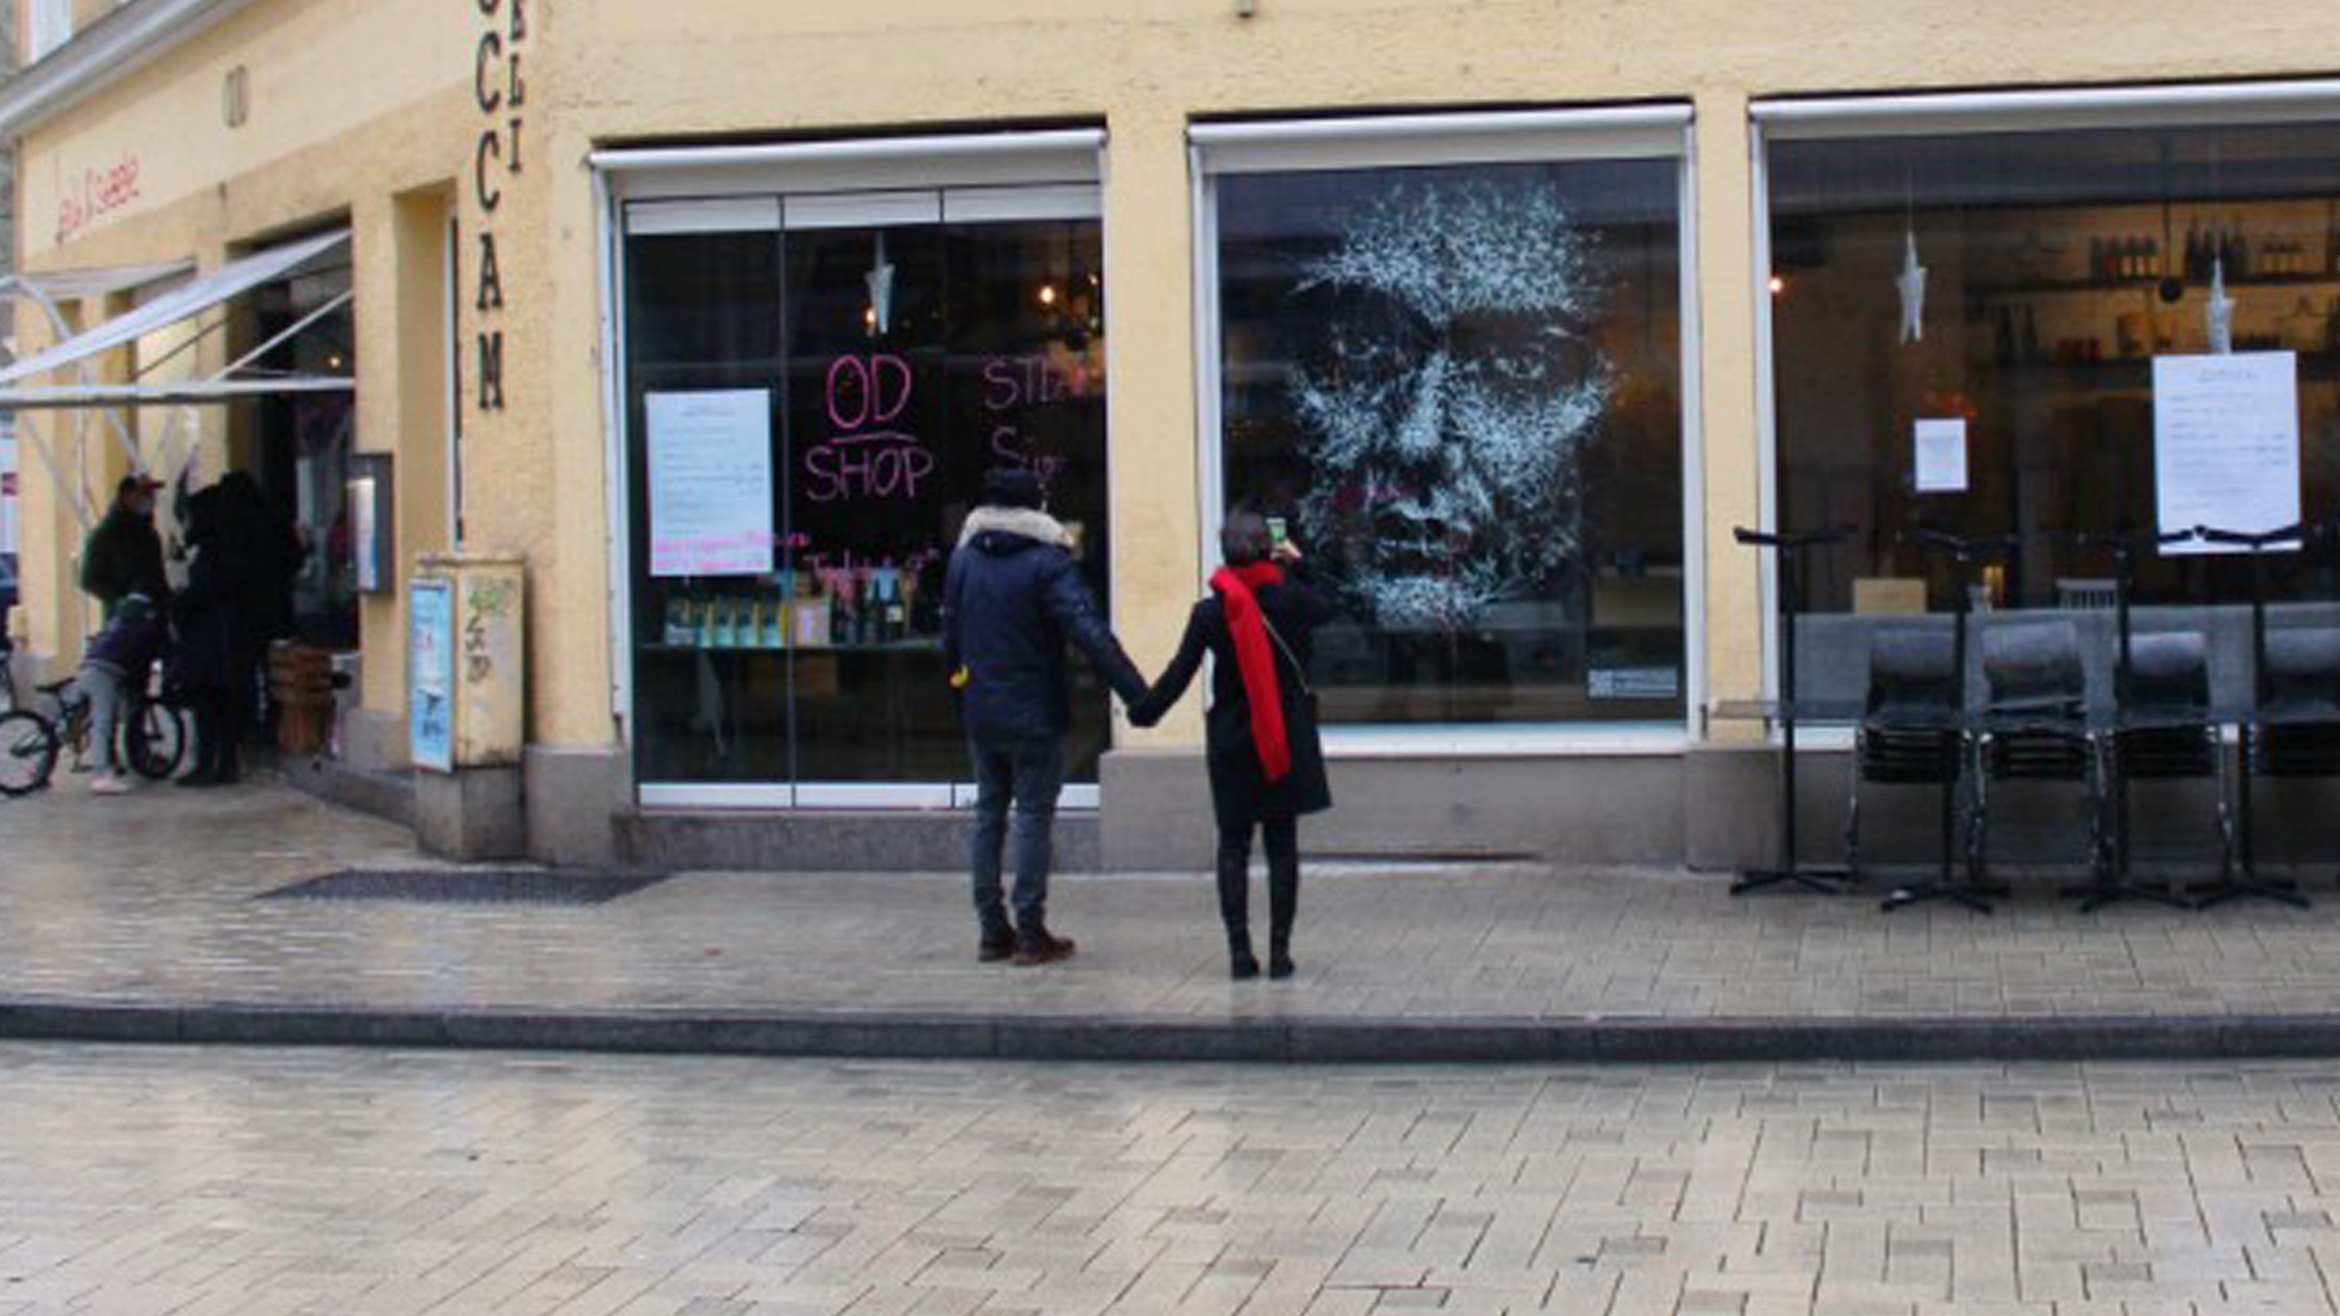 Terre des Femmes mact mit einer Schaufensteraktion in München auf häusliche Gewalt aufmerksam –